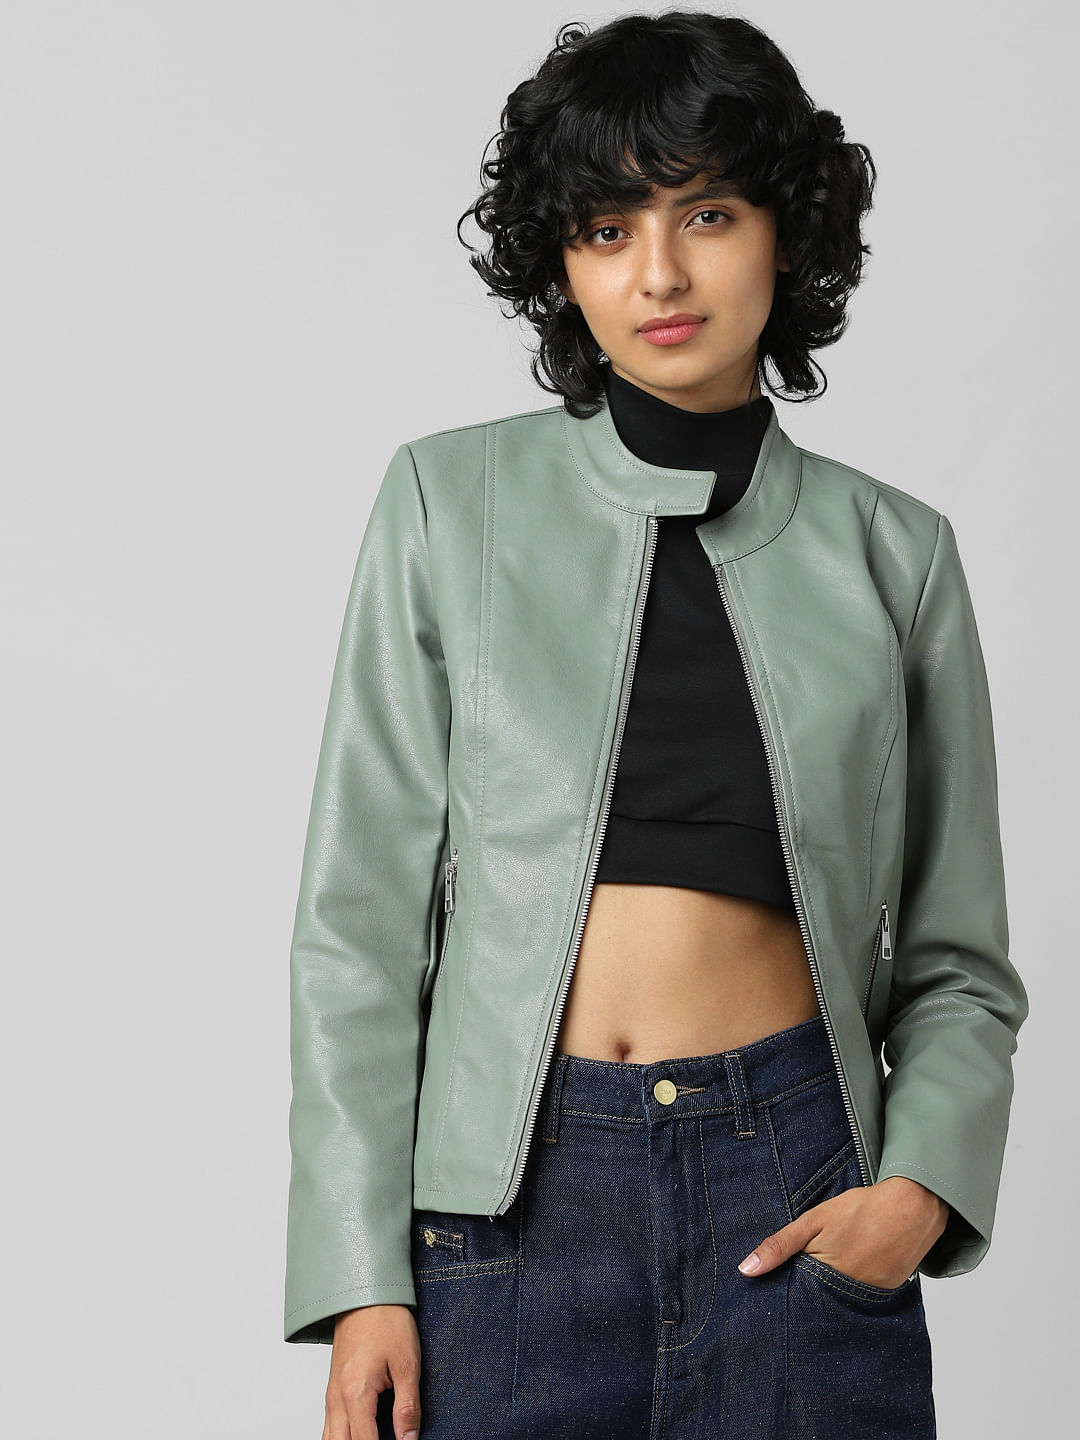 Bershka vest Beige S WOMEN FASHION Jackets Fur discount 84% 